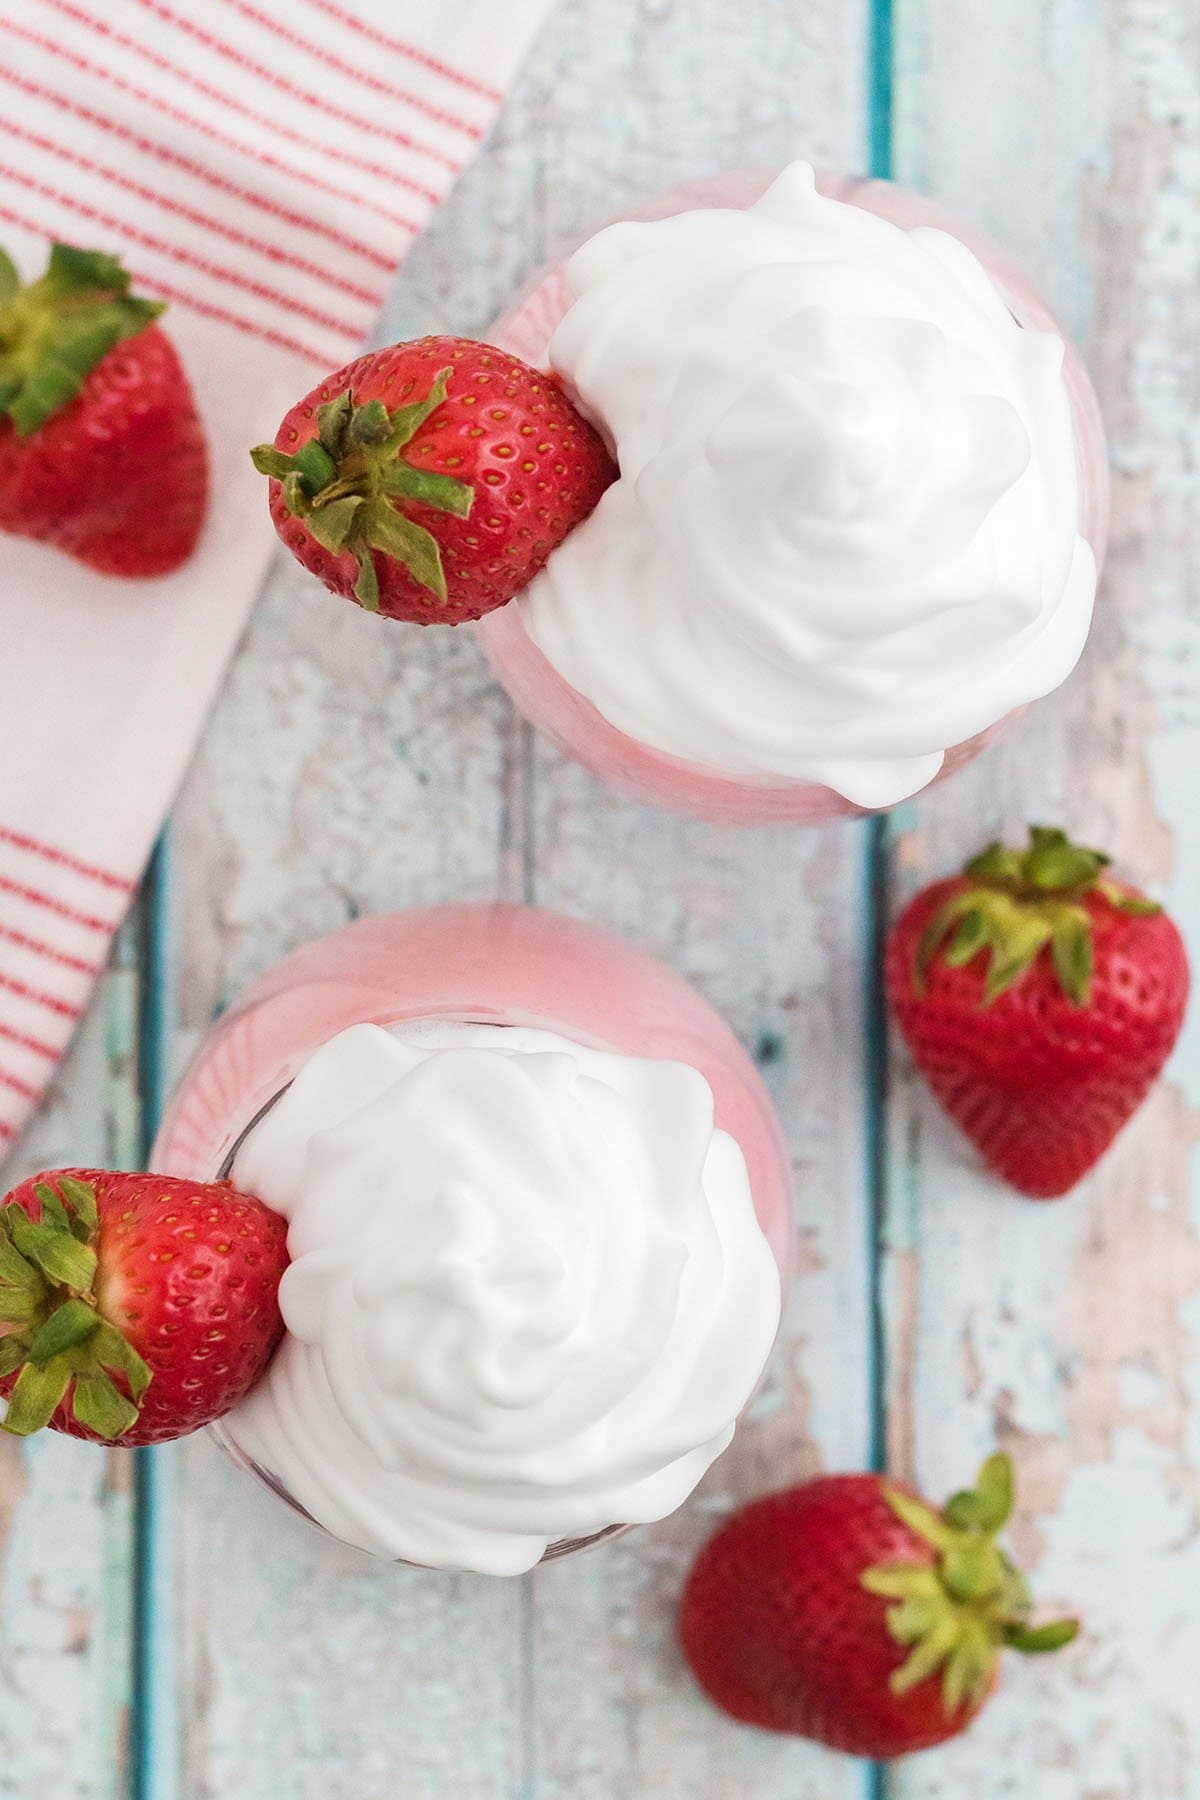 Boozy Strawberry Milkshake with whipped cream